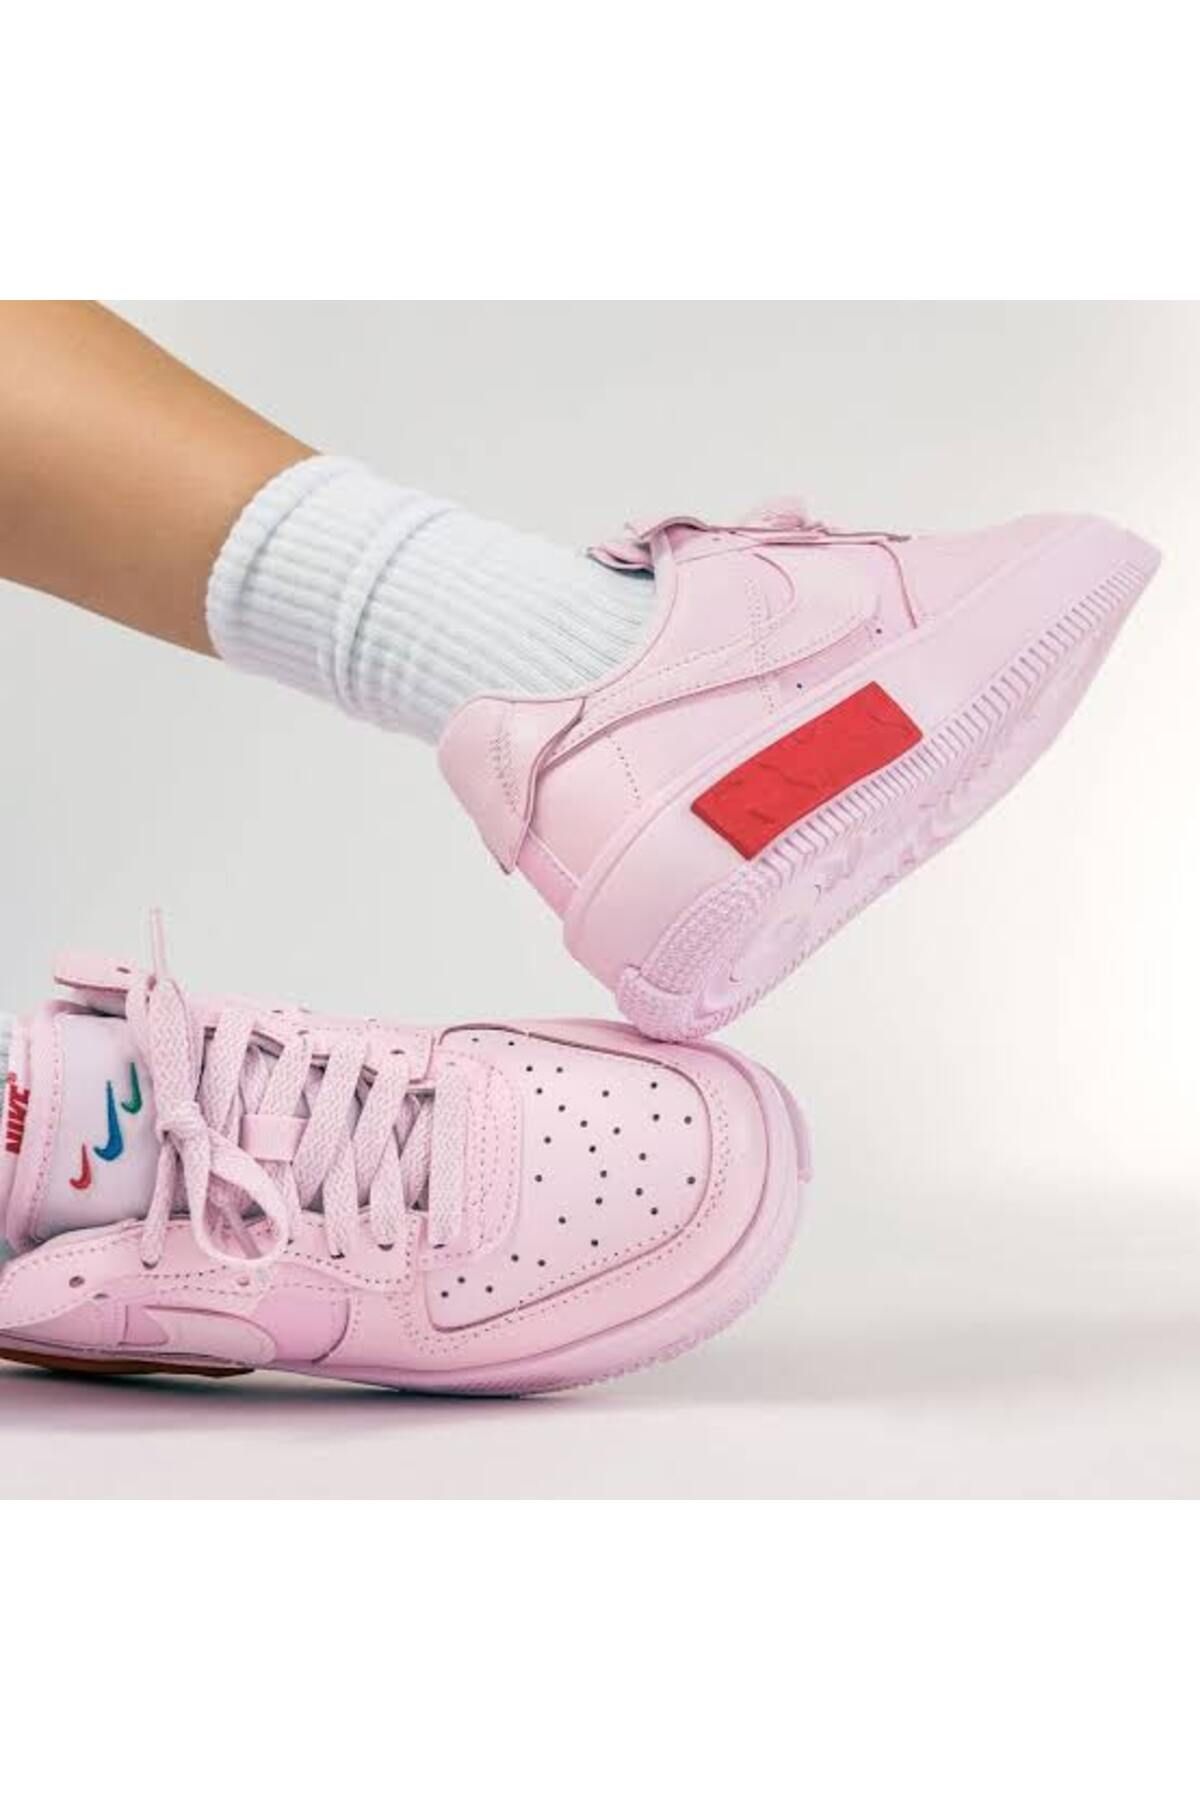 Nike Force 1 Fontanka Cocuk Spor Ayakkabı Stilim SPOR